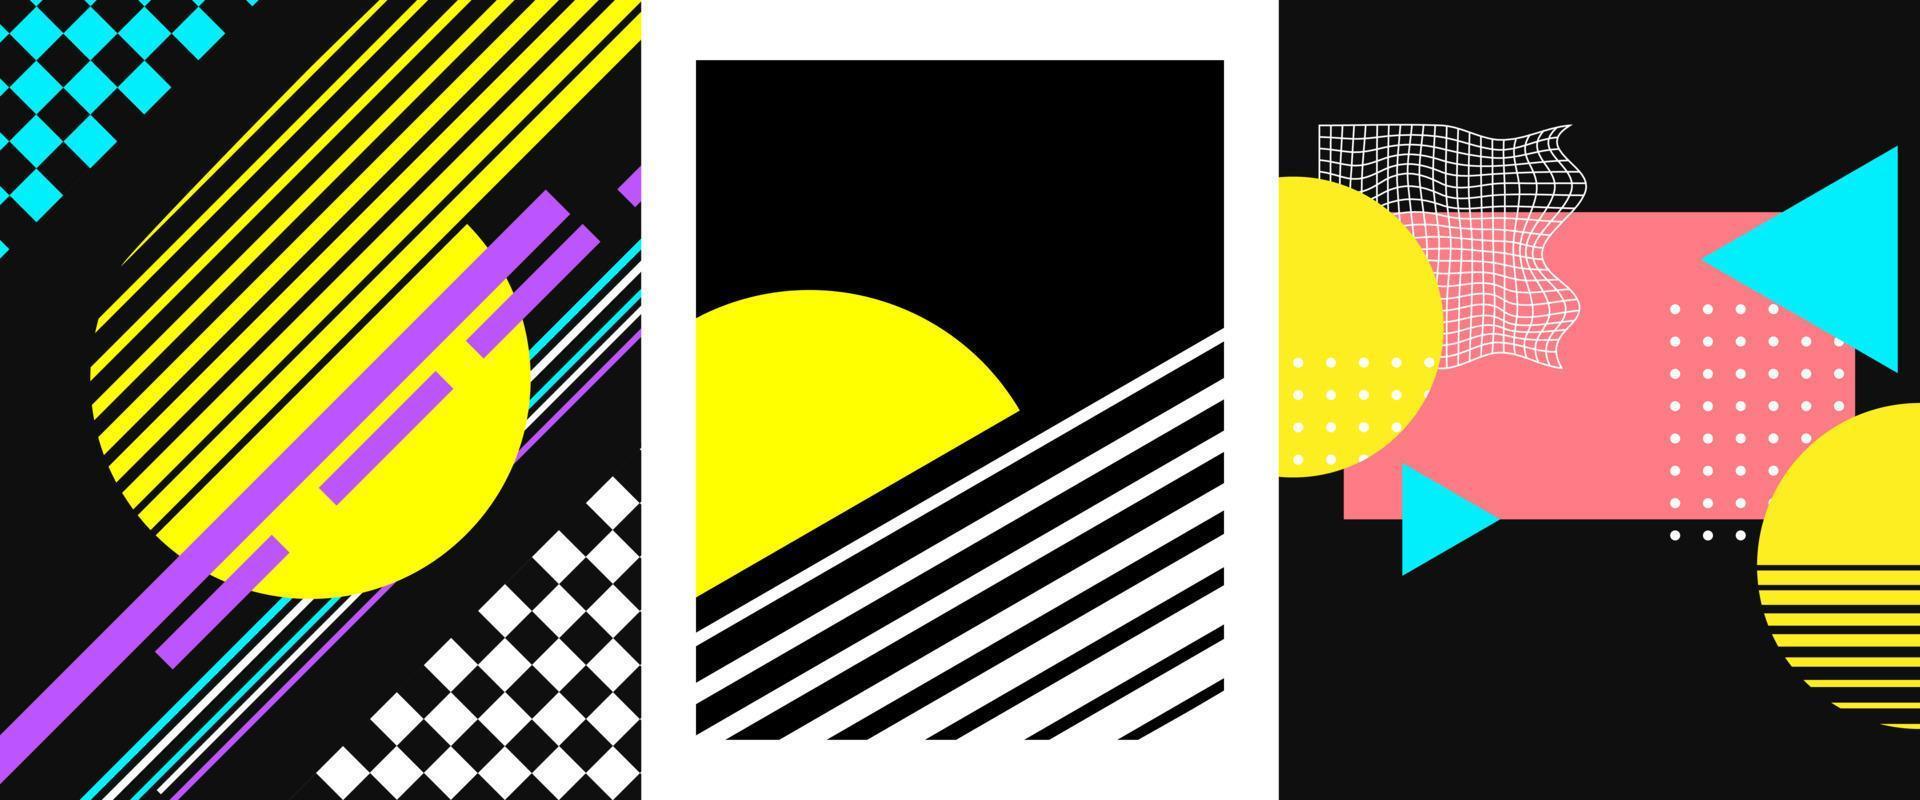 80er Jahre Plakate Satz. Sammlung von abstrakt Abbildungen im retro Stil. Jahrgang Grafik Designs zum Flyer, Drucken Projekte. Vektor Kunstwerke.